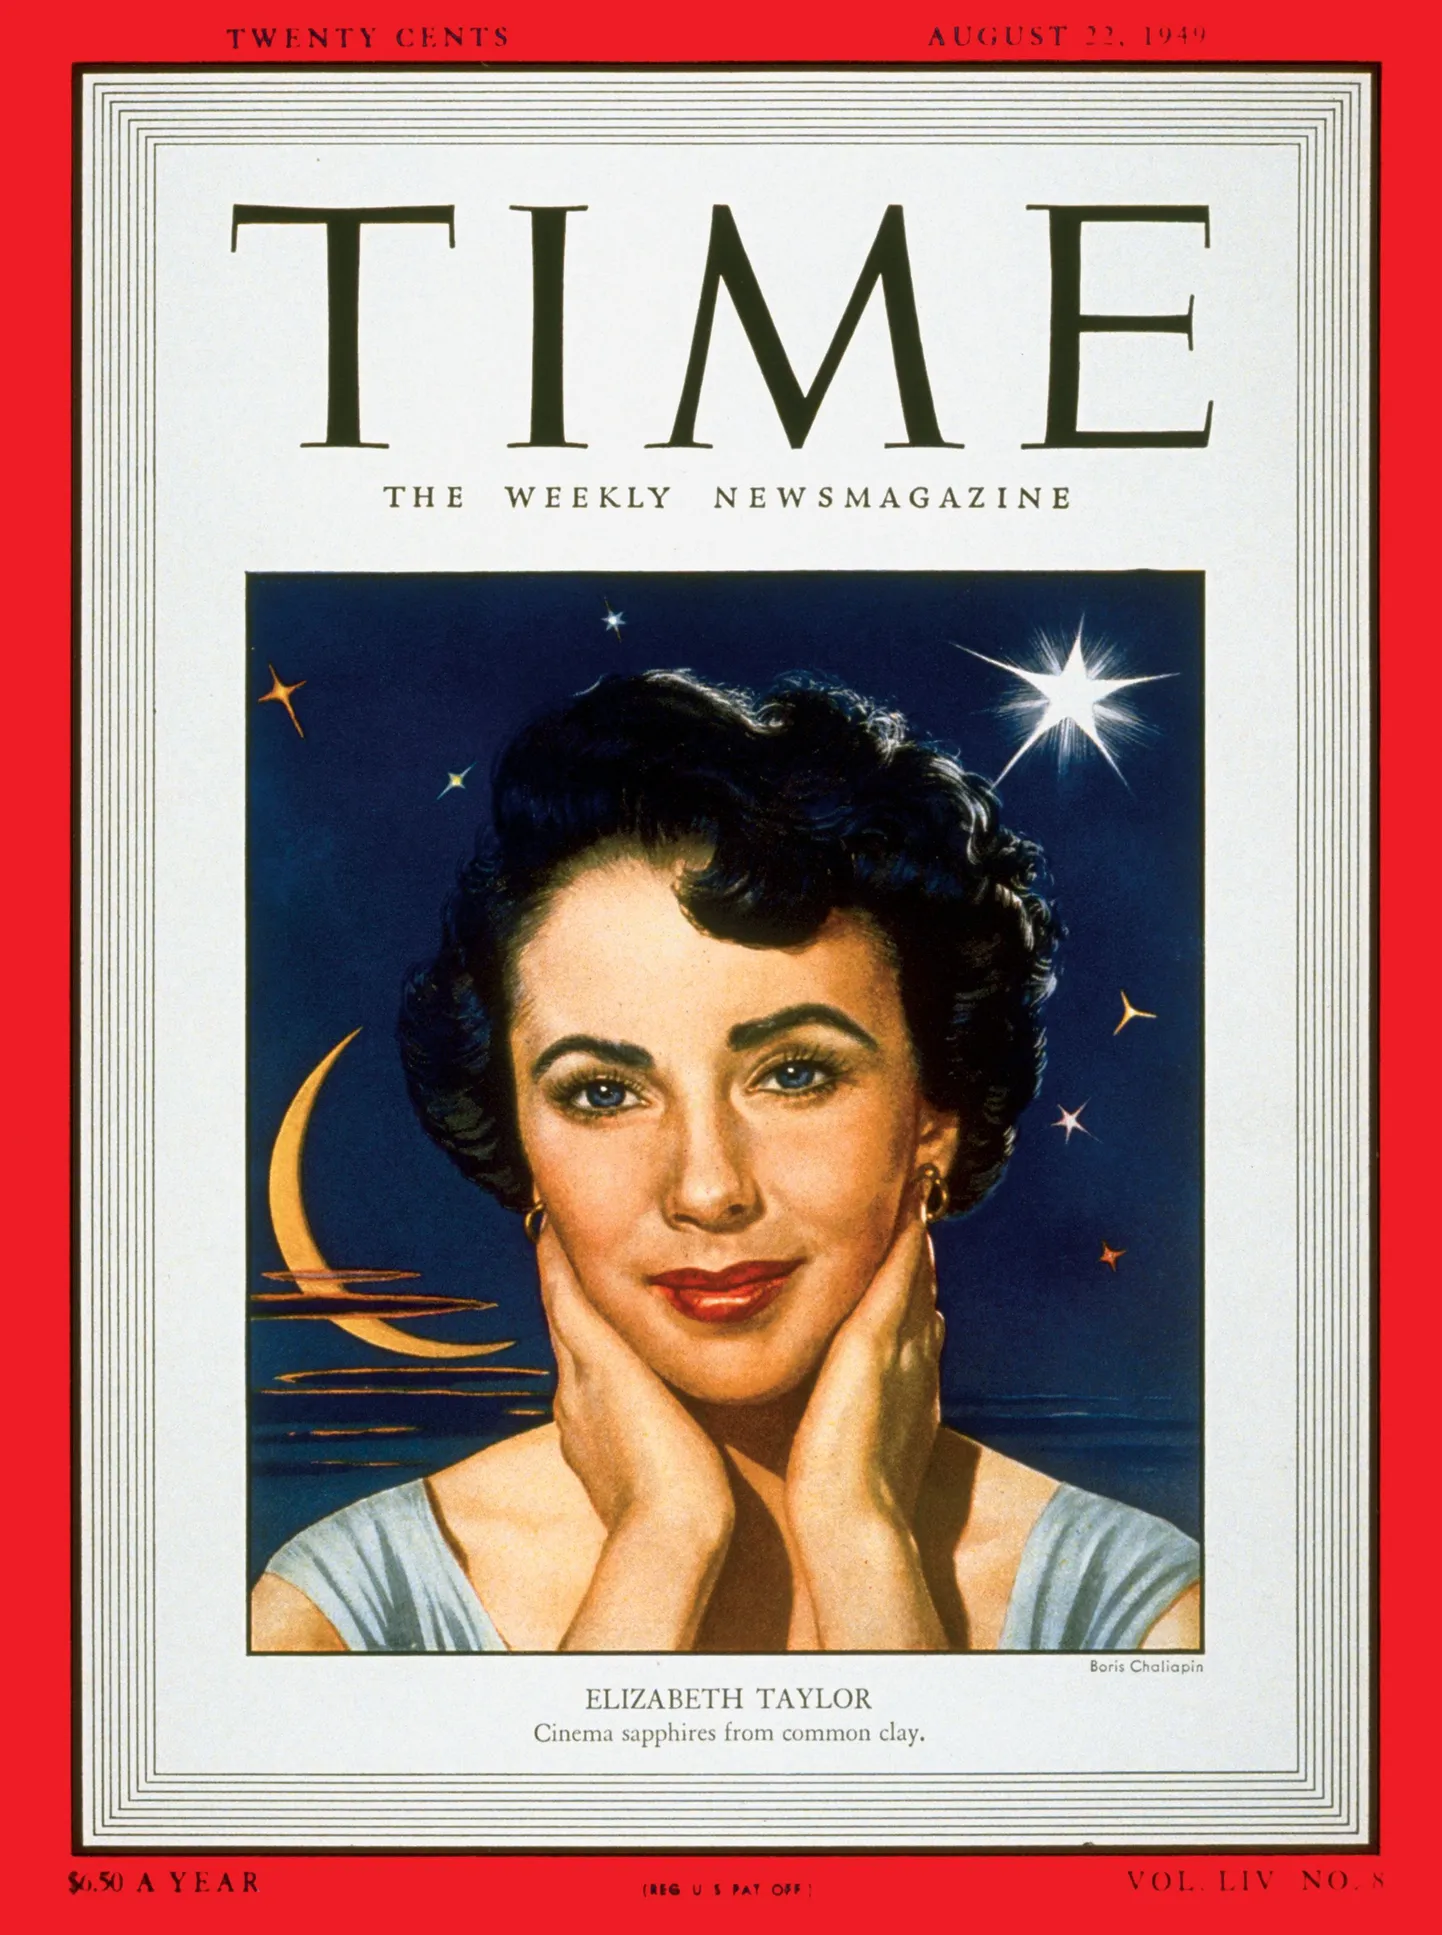 Ajakirja Time esikaas 1949. aasta augustist, Elizabeth Taylor